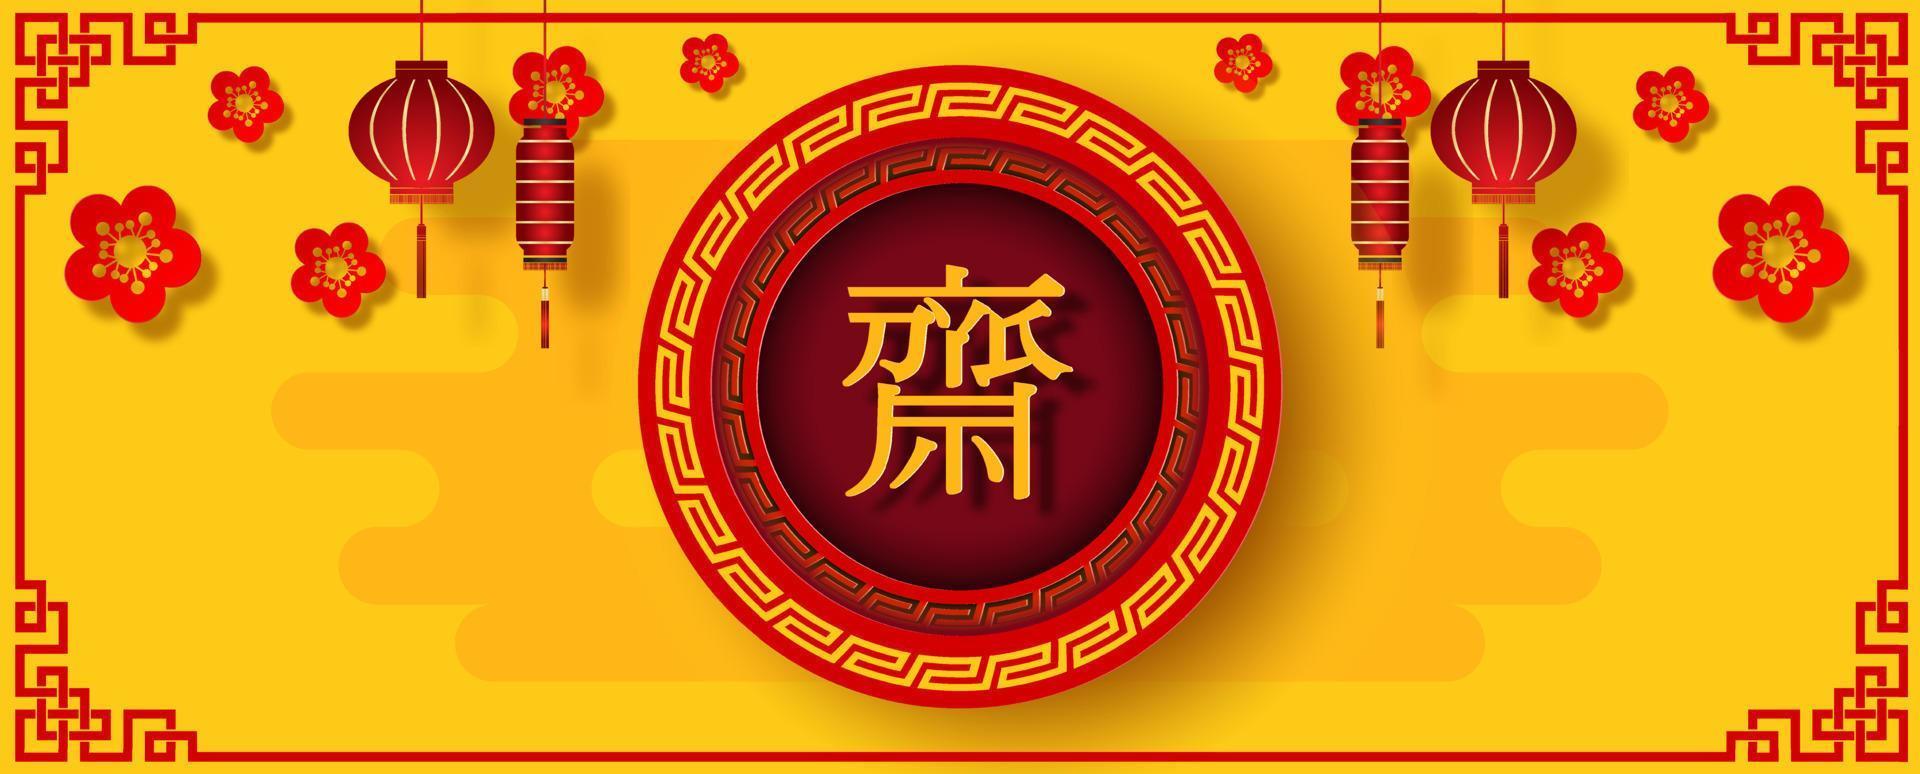 banner web del festival vegano chino o letrero de tienda en corte de papel y diseño vectorial con espacio para textos. Las letras chinas rojas significan ayuno para adorar a Buda en inglés. vector